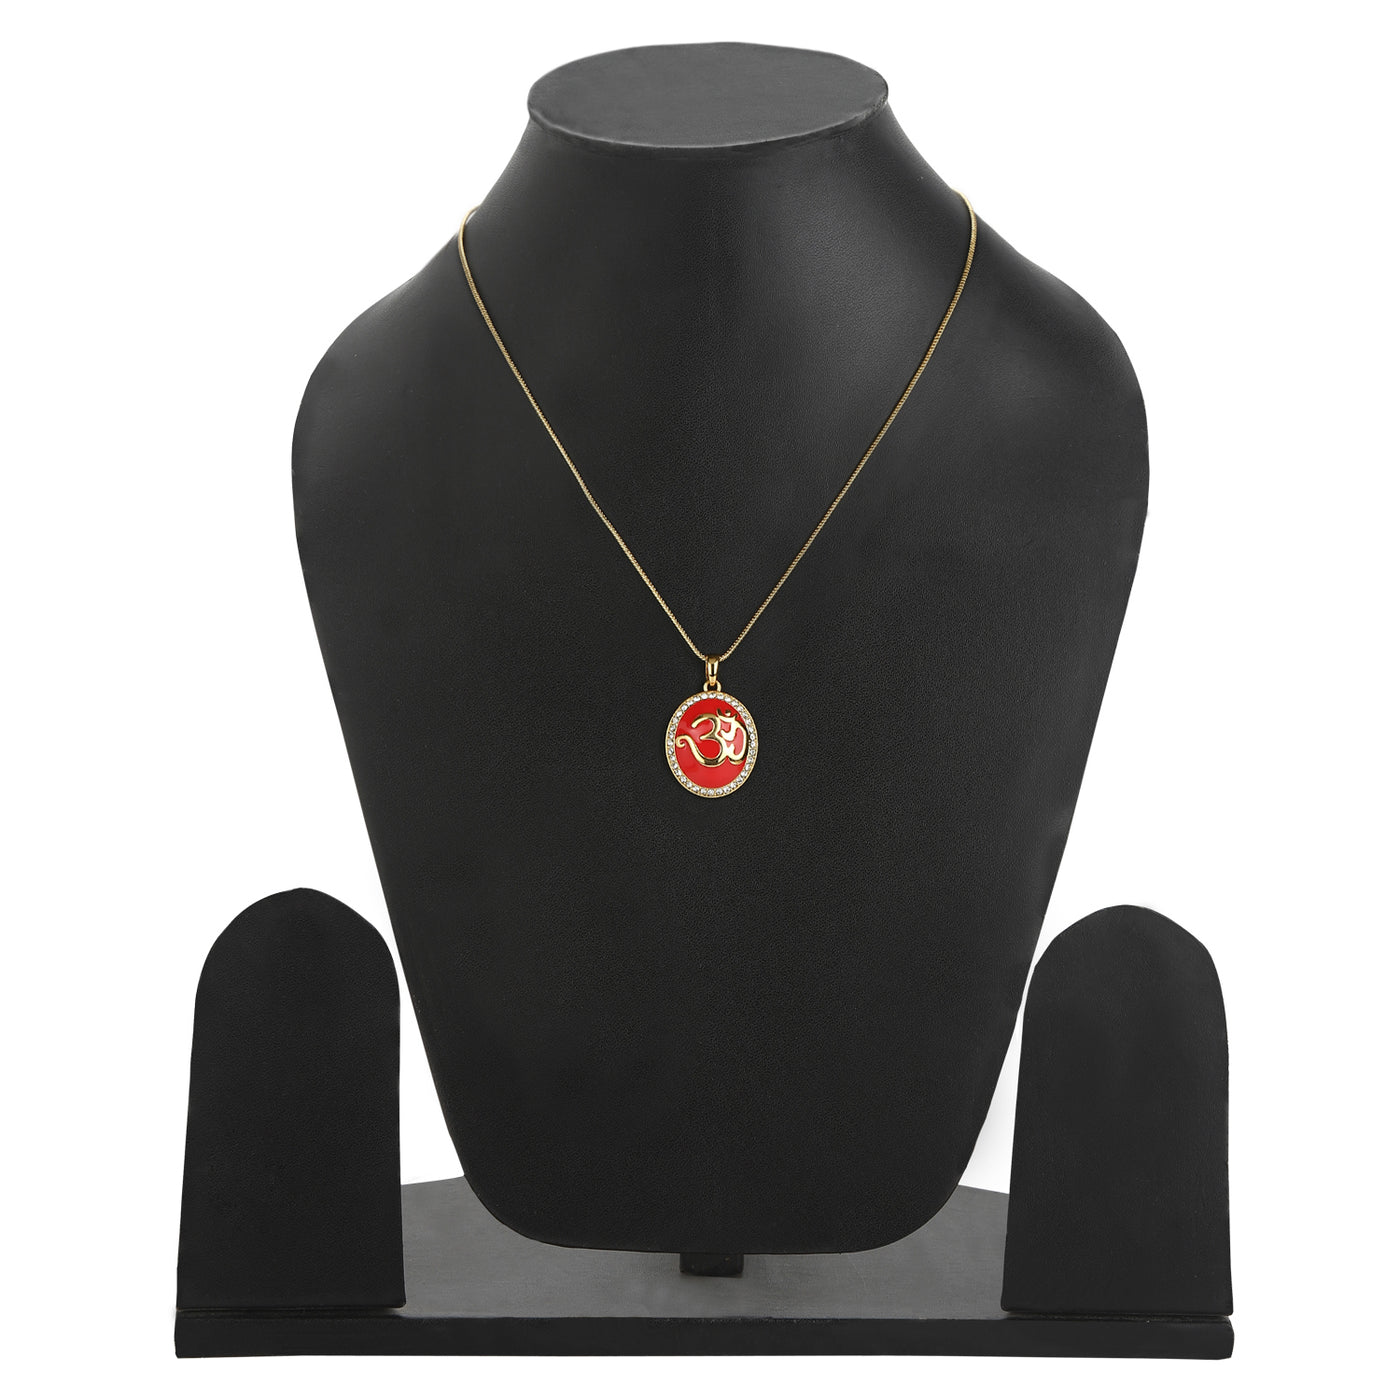 Estele - Red Enamel Gold Plated OM Pendant for Women / Girls